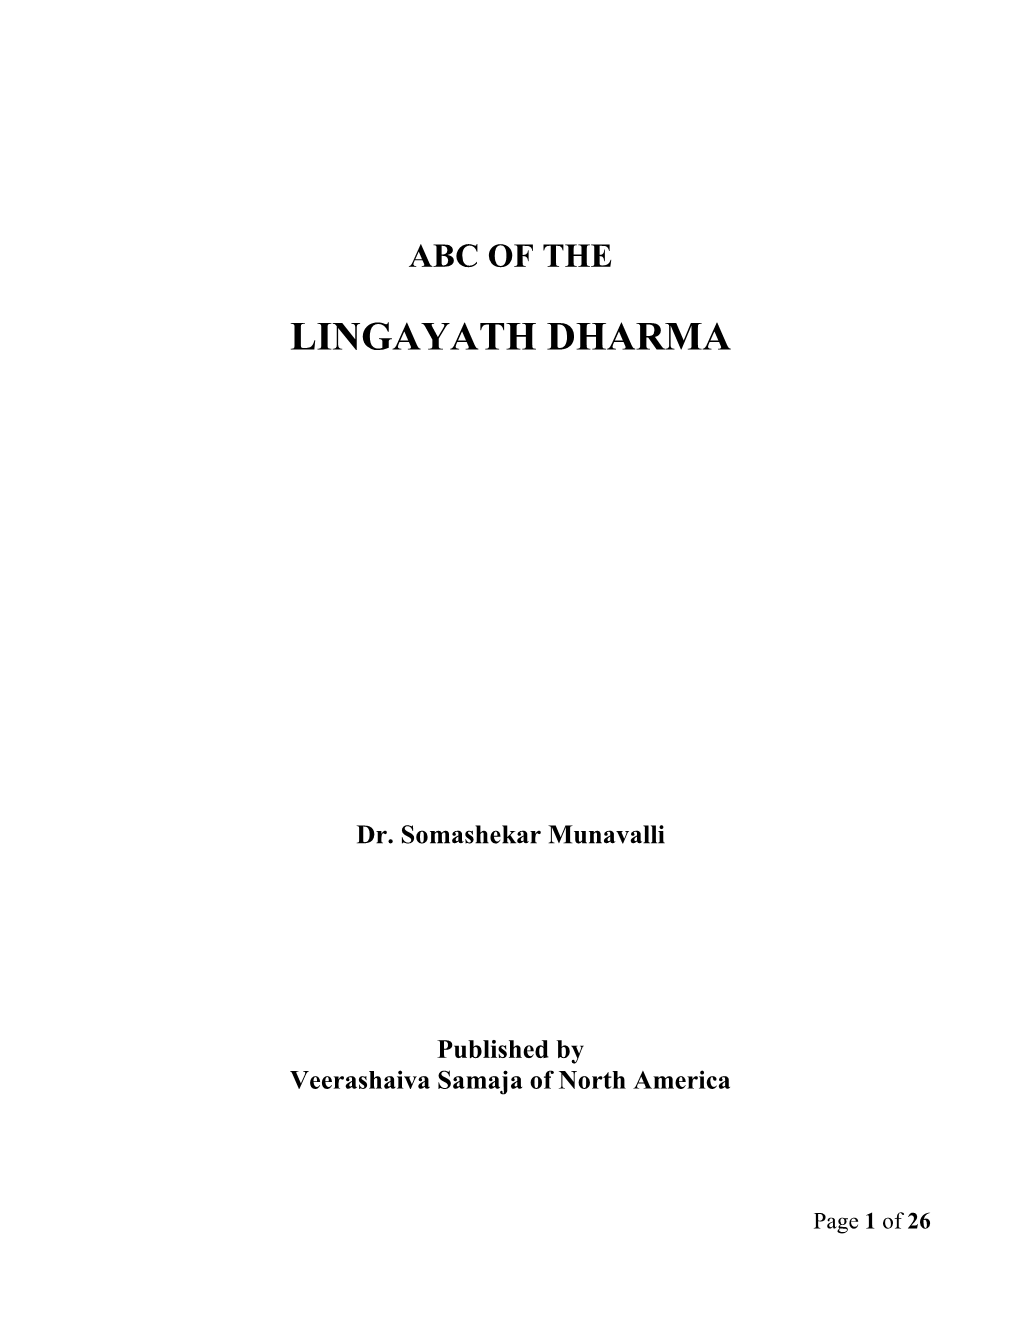 Lingayat Dharma